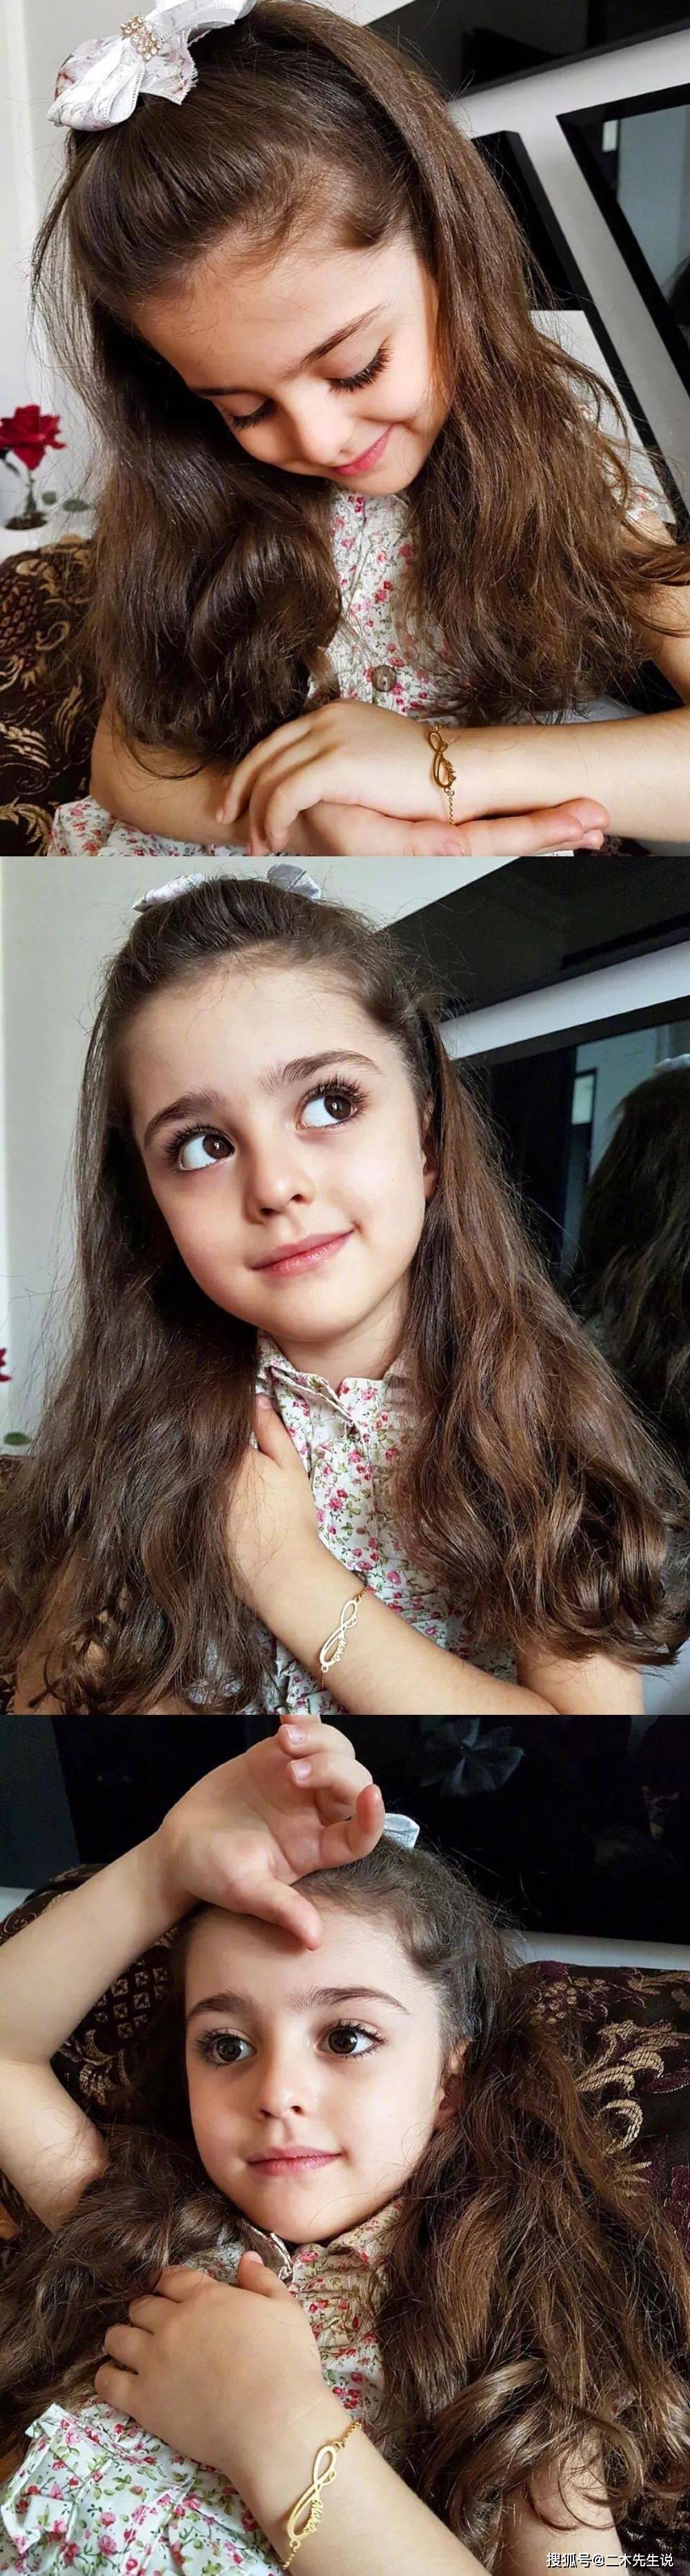 伊朗8岁小女孩被称为全球最美!因太美,父亲辞职做贴身保镖